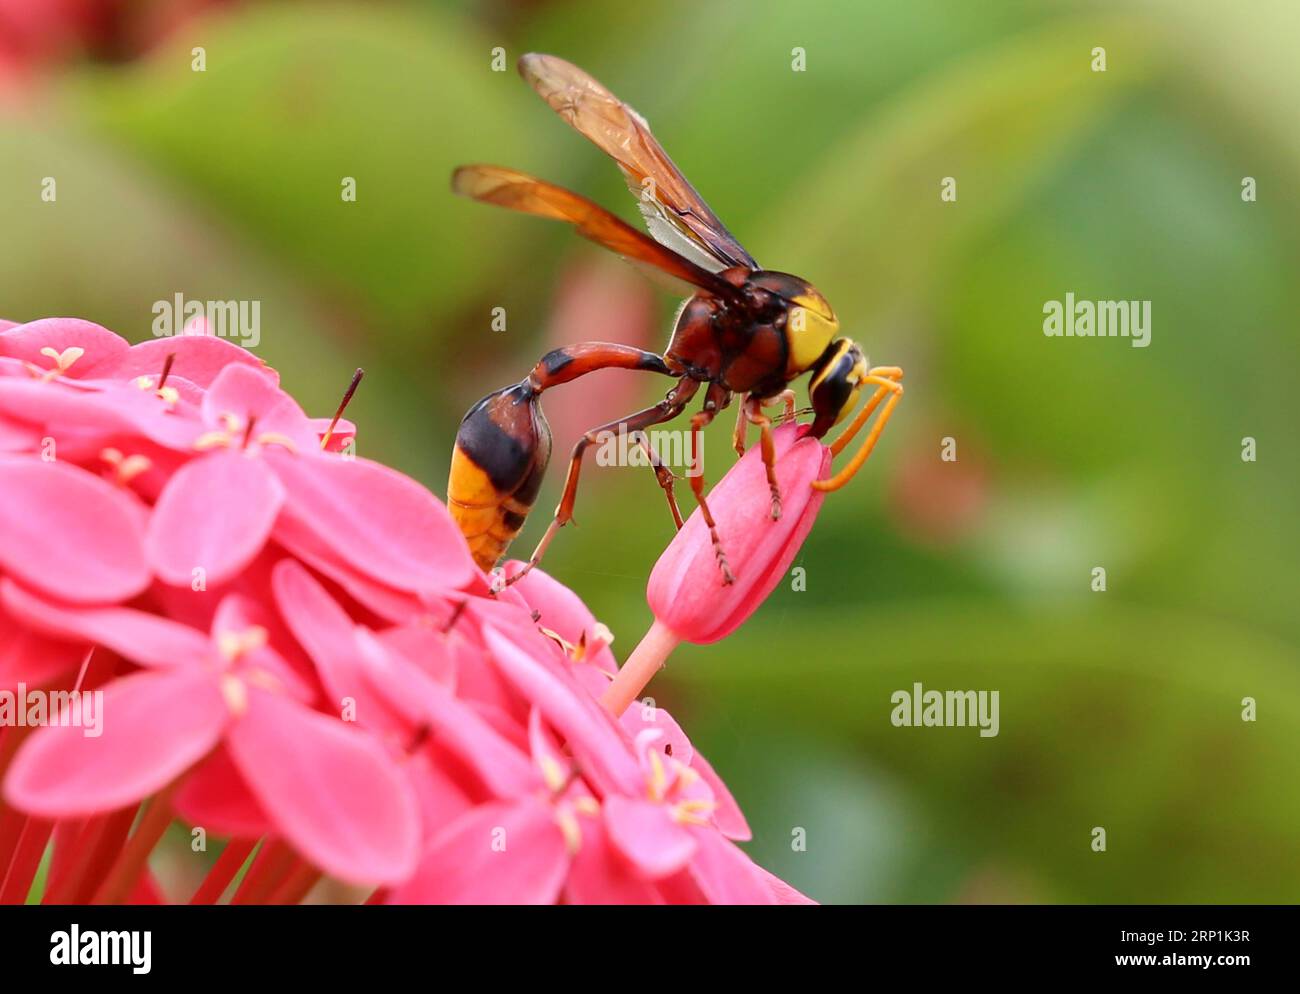 (180710) -- NAY PYI TAW, 10. Juli 2018 -- Eine Wespe sammelt Pollen aus einer Blume in Nay Pyi Taw, Myanmar, 10. Juli 2018.U Aung)(yg) MYANMAR-NAY PYI TAW-POLLENSAMMLUNG yangon PUBLICATIONxNOTxINxCHN Stockfoto